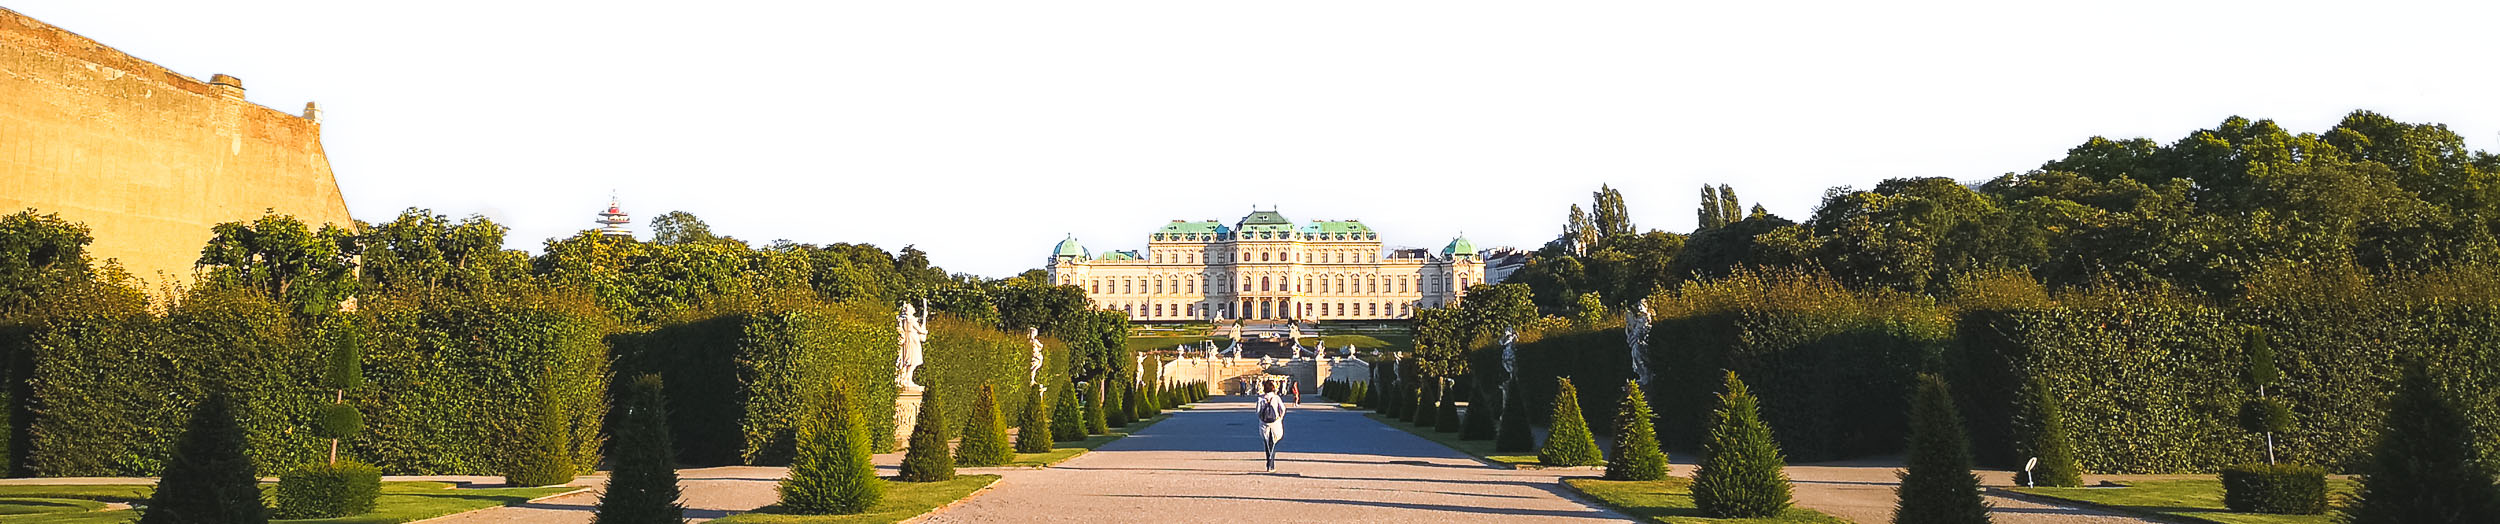 Belvedere Palace Complex in Landstrasse, Vienna